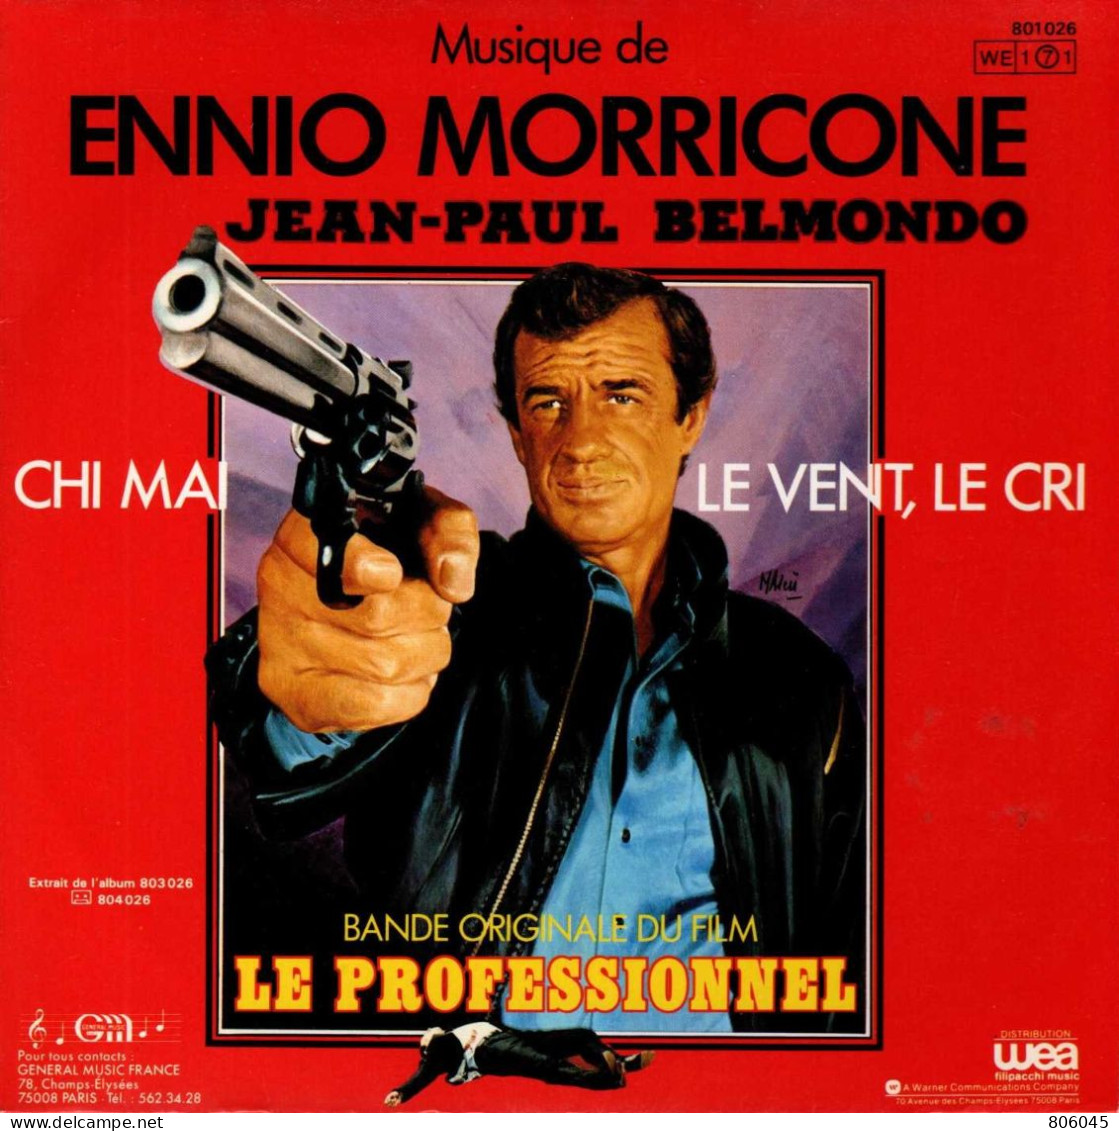 Ennio Morricone - "le Professionnel" - Soundtracks, Film Music